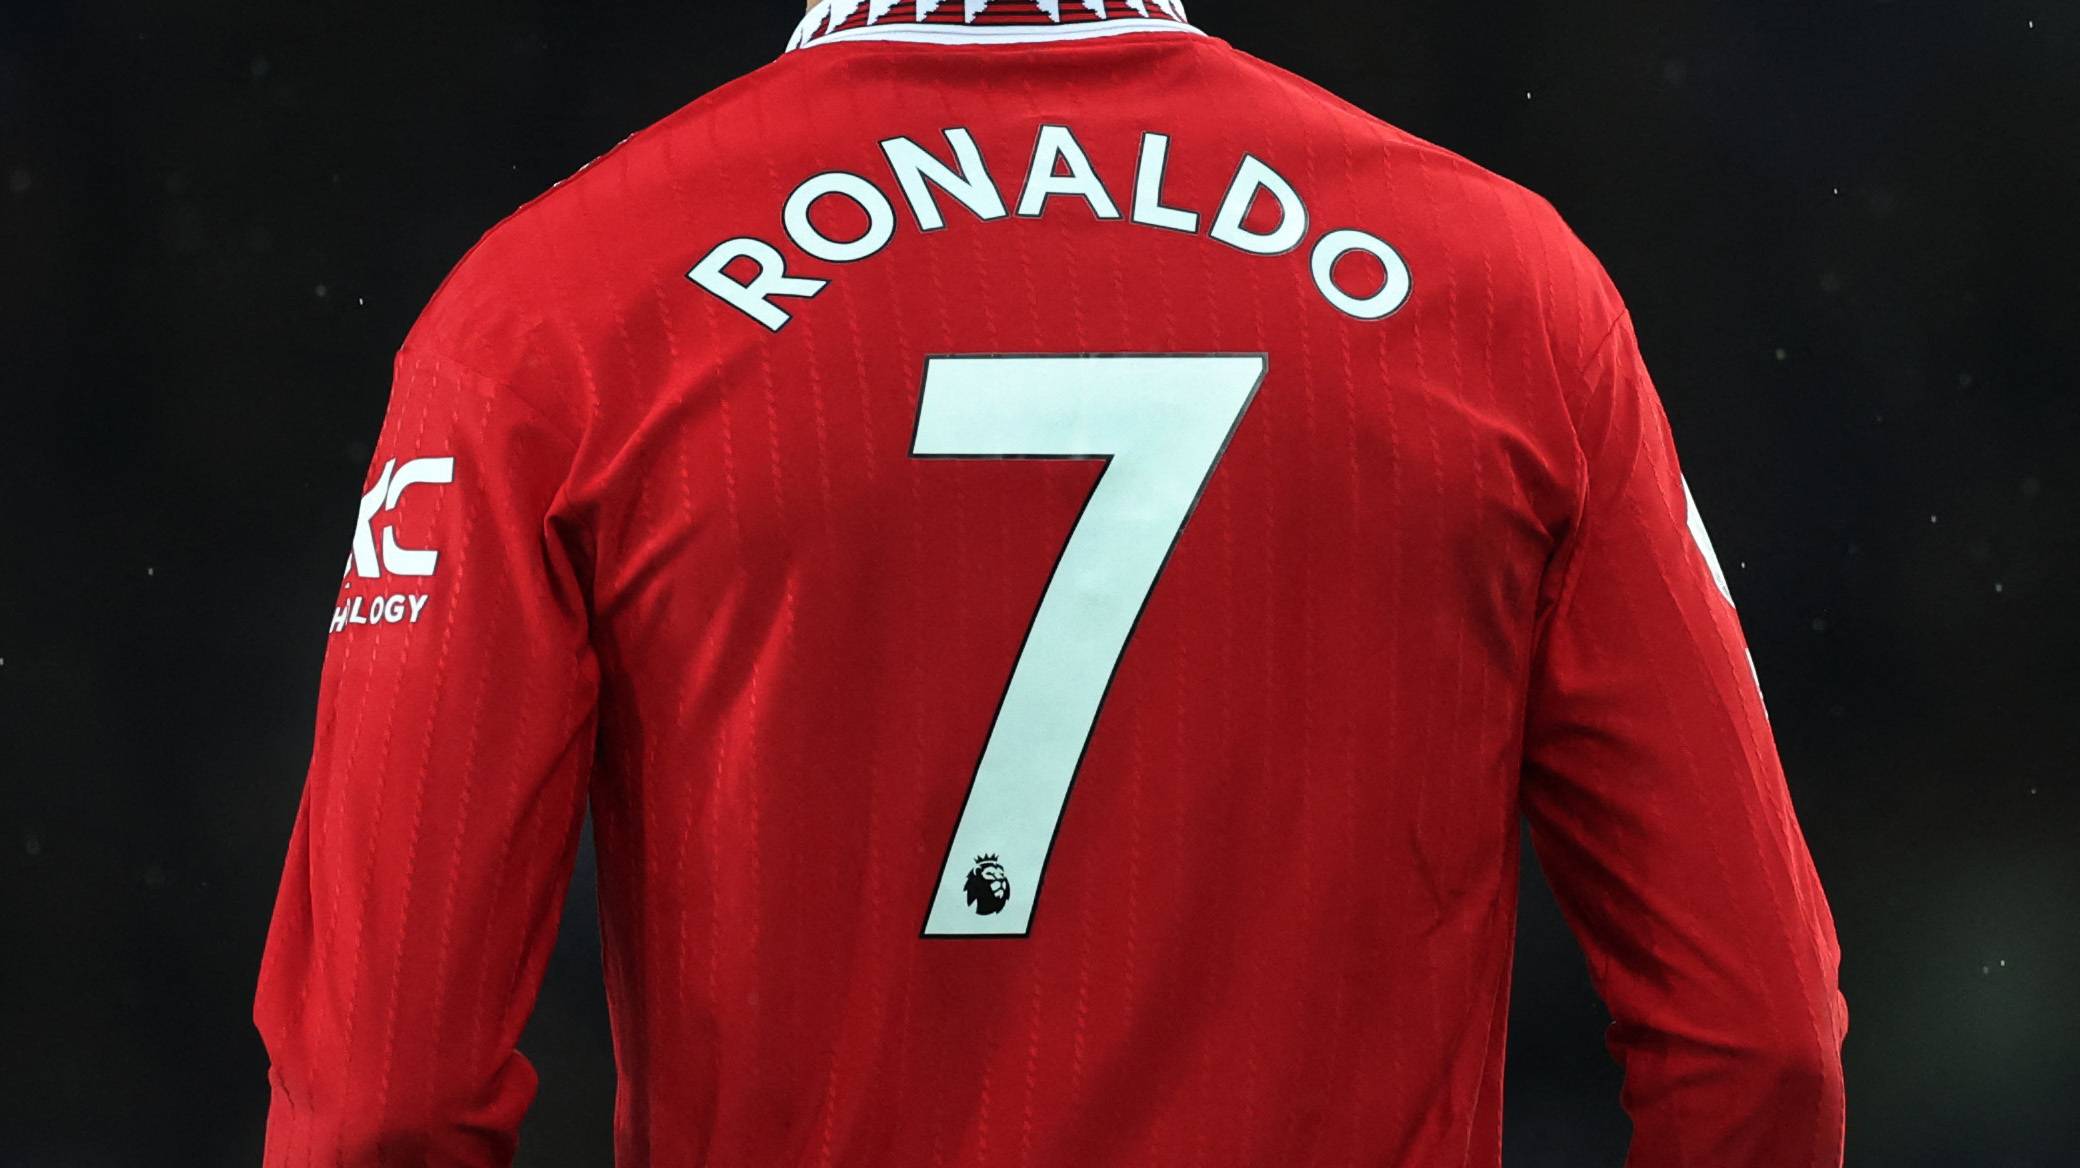 Ronaldo's No. 7 shirt.